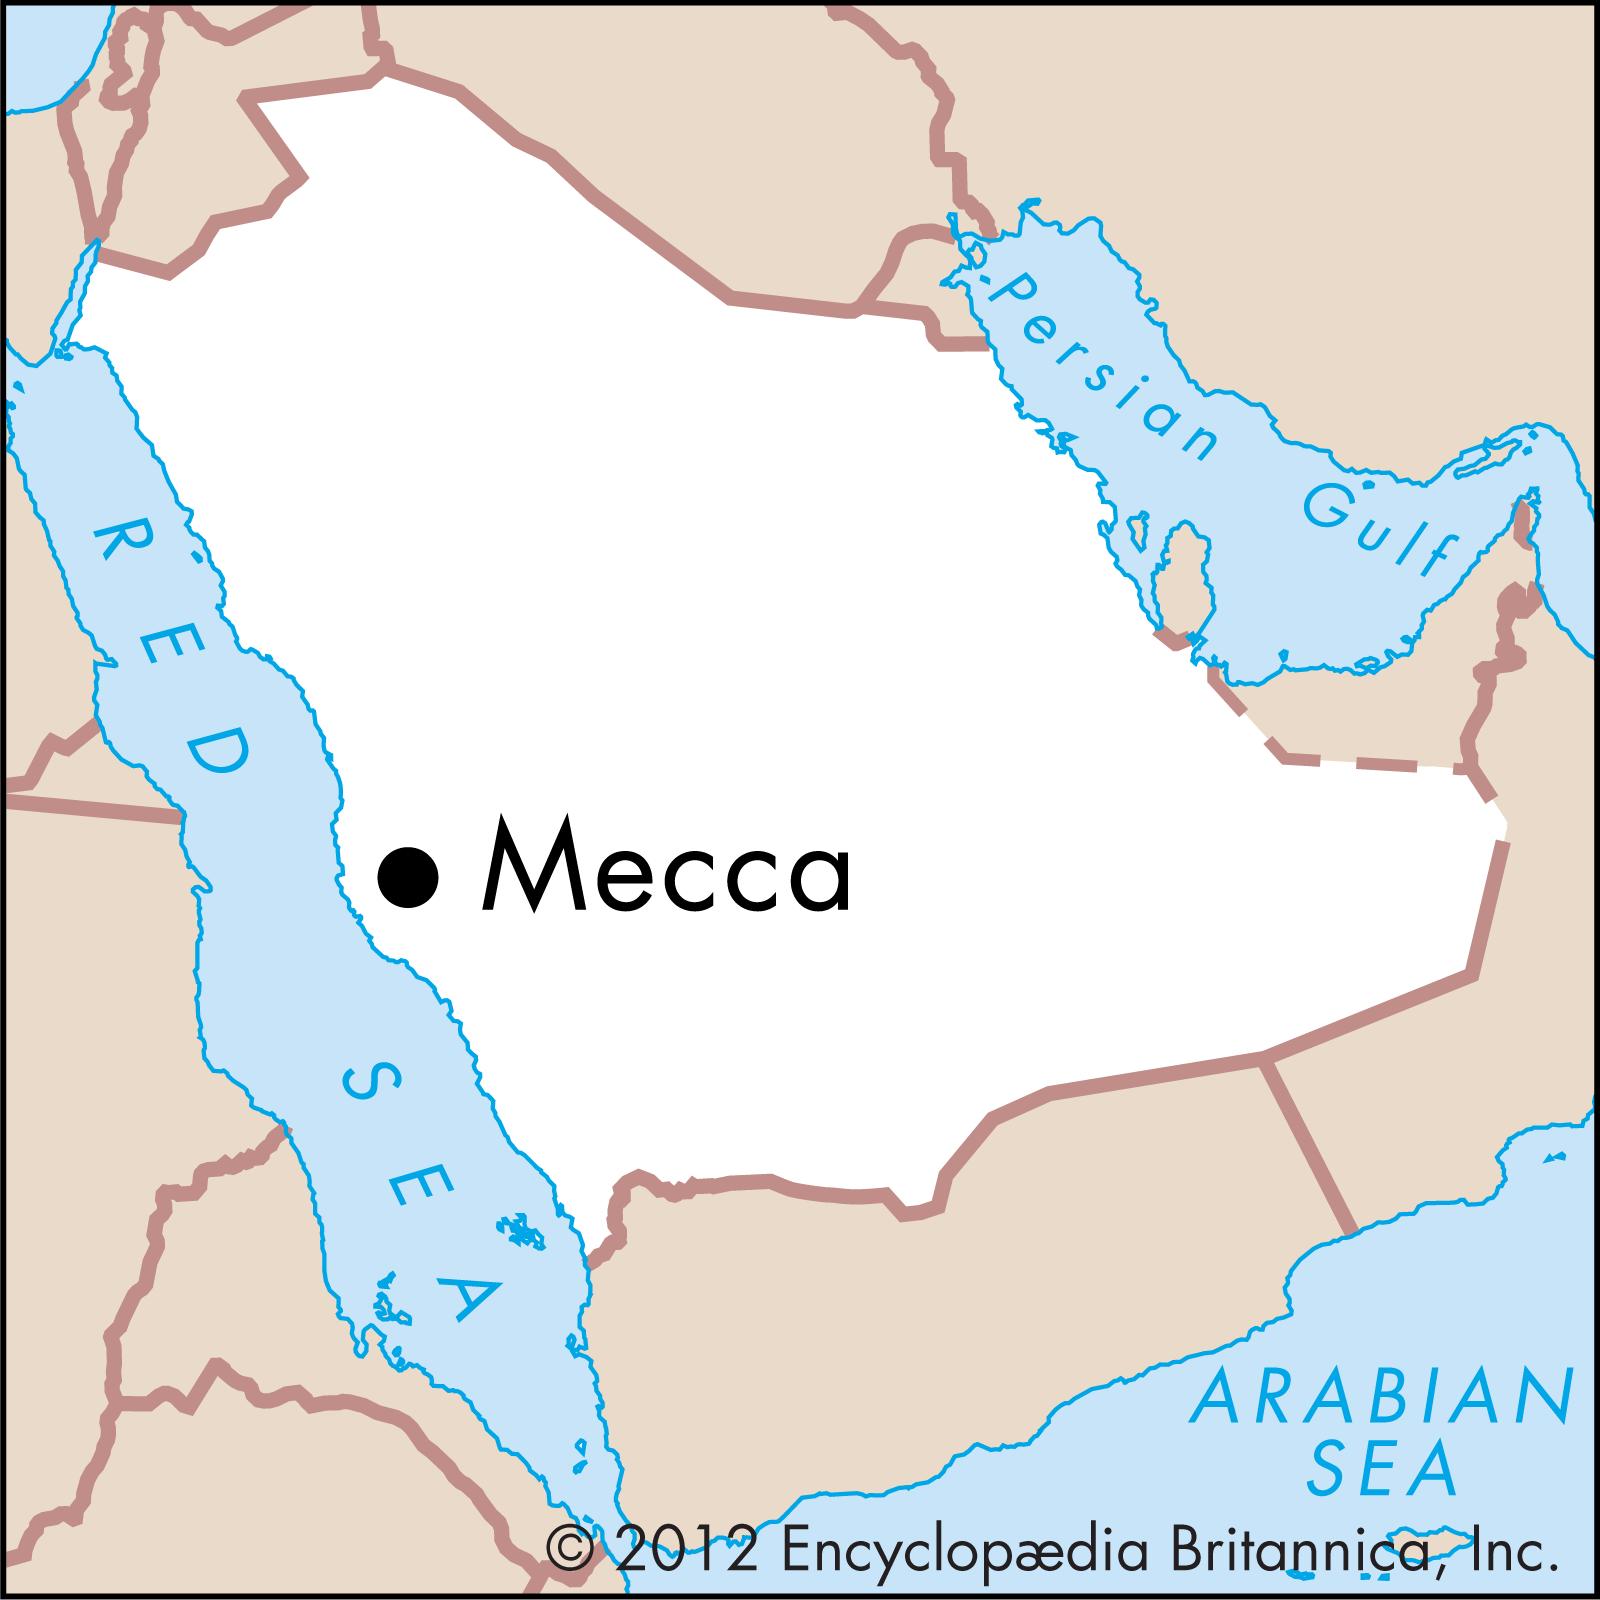 Священные города мусульман Мекка и Медина на карте. Мекка на карте Саудовской Аравии. Города мусульман Мекка и Медина на карте.